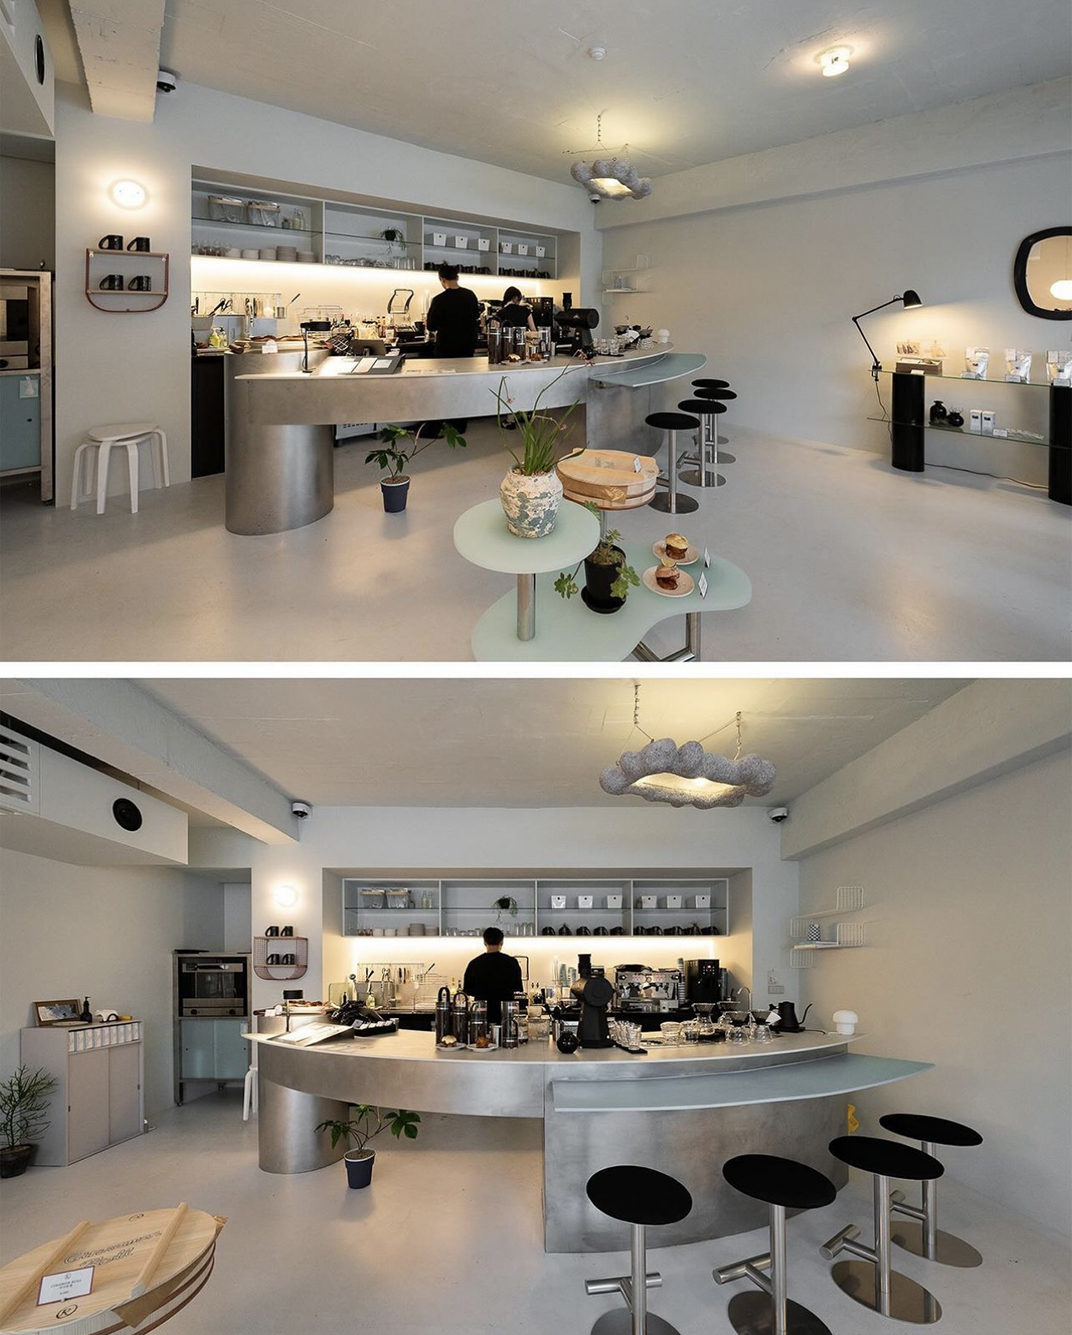 有意思的吧台咖啡店 韩国 首尔 深圳 北京 上海 广州 武汉 餐饮商业空间 logo设计 vi设计 空间设计